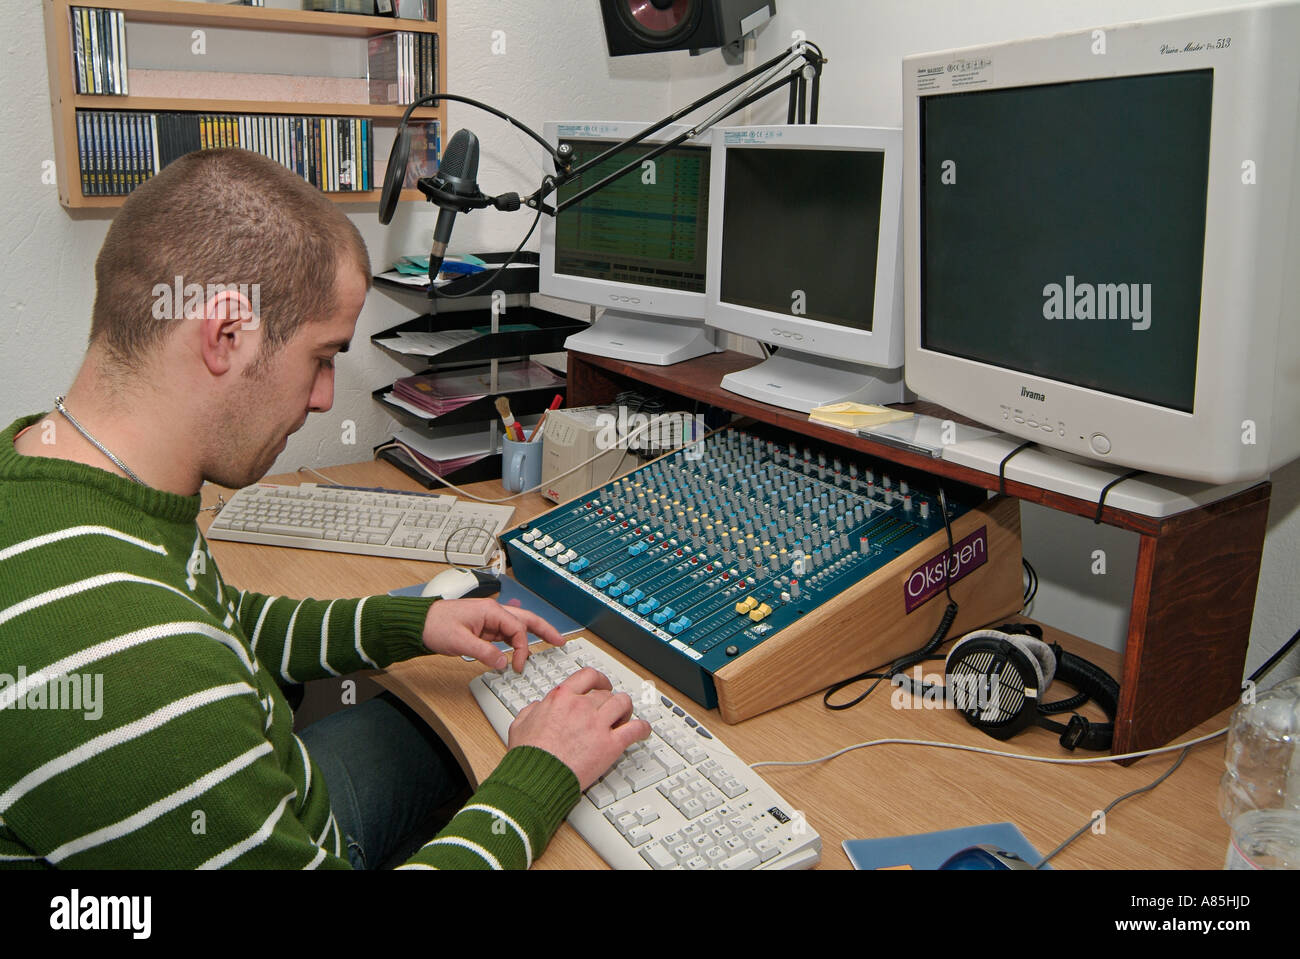 Junge kaukasischen männlichen Sat an einem Computerarbeitsplatz im Produktionsstudio eine kommerzielle Radiostation Stockfoto